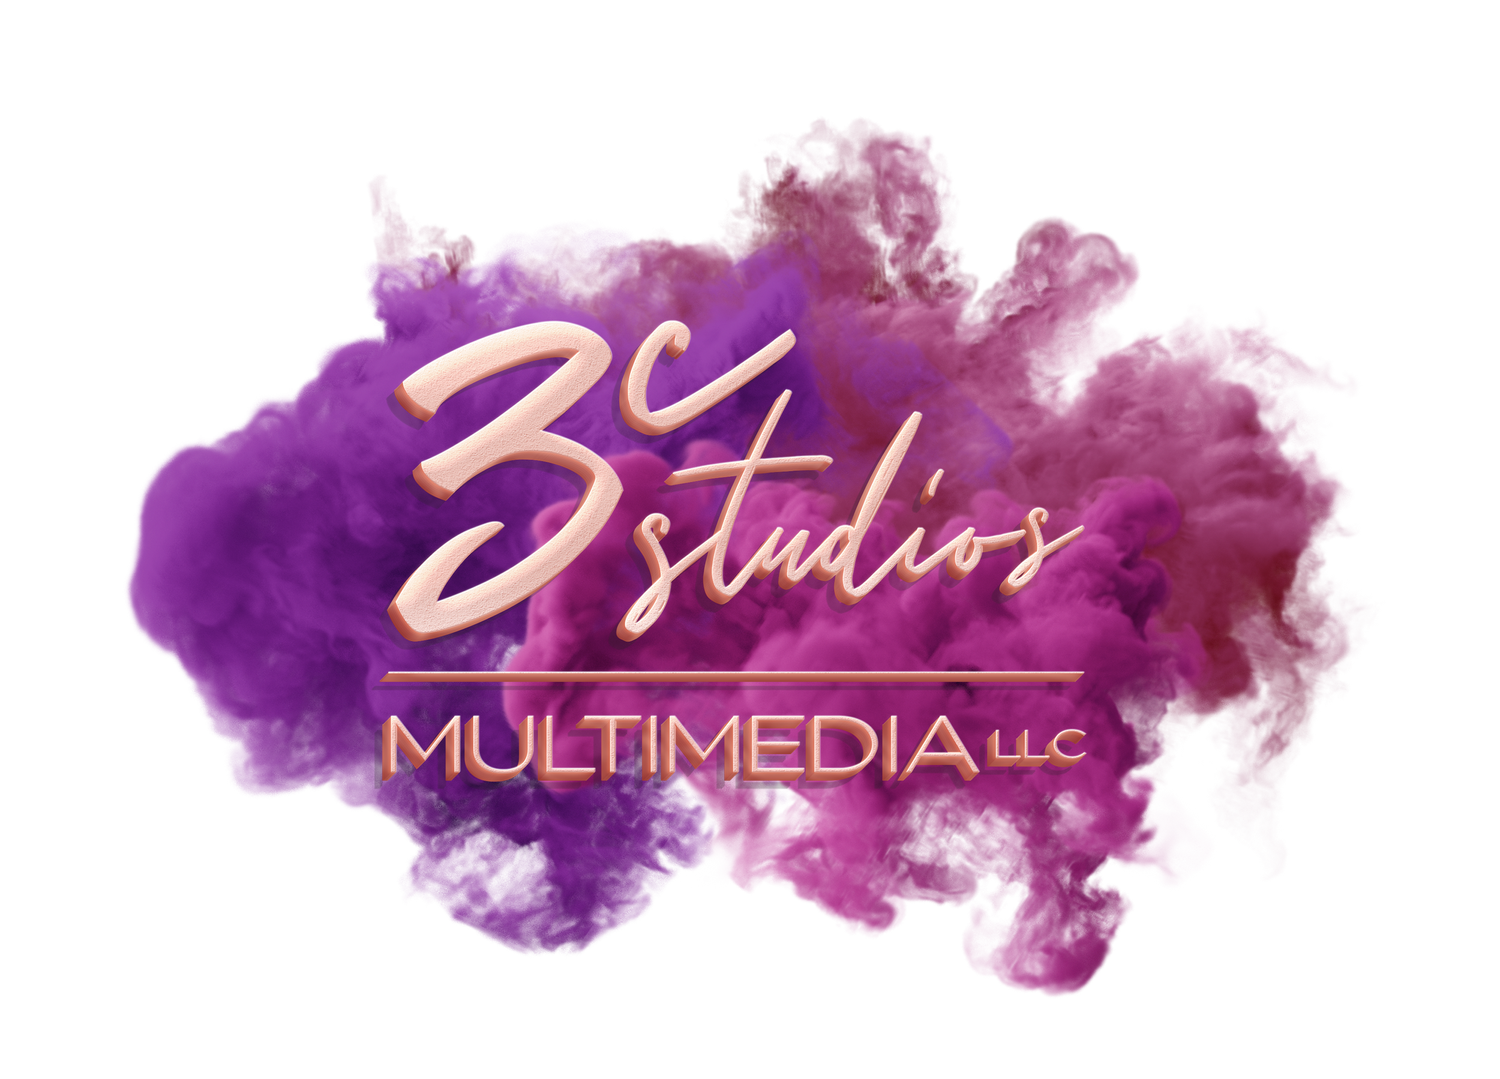 3C Studios Multimedia